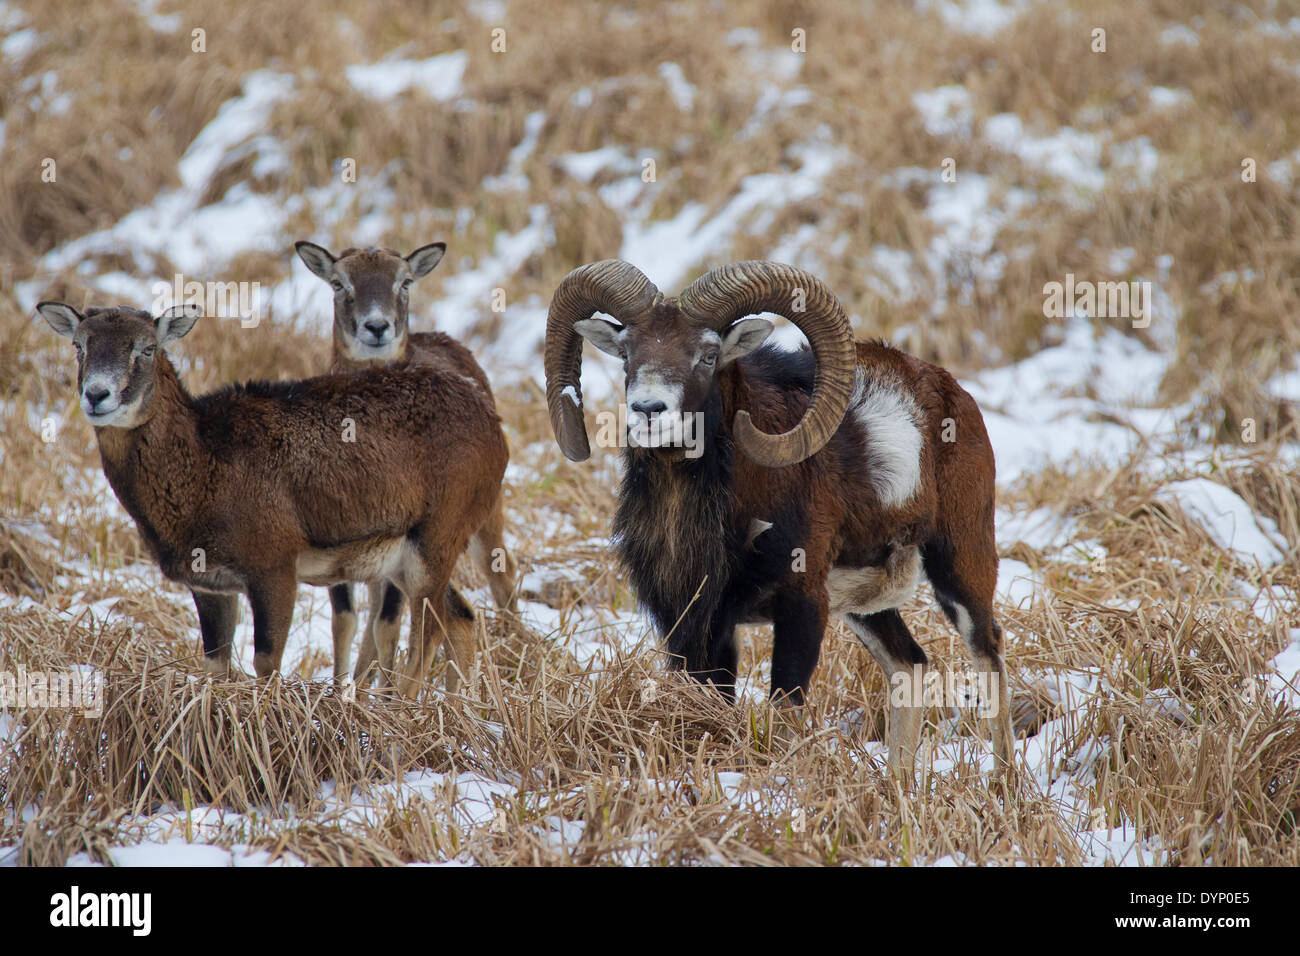 Mouflon (Ovis gmelini européenne / Ovis ammon musimon / Ovis orientalis musimon) ram avec brebis dans la neige en hiver Banque D'Images